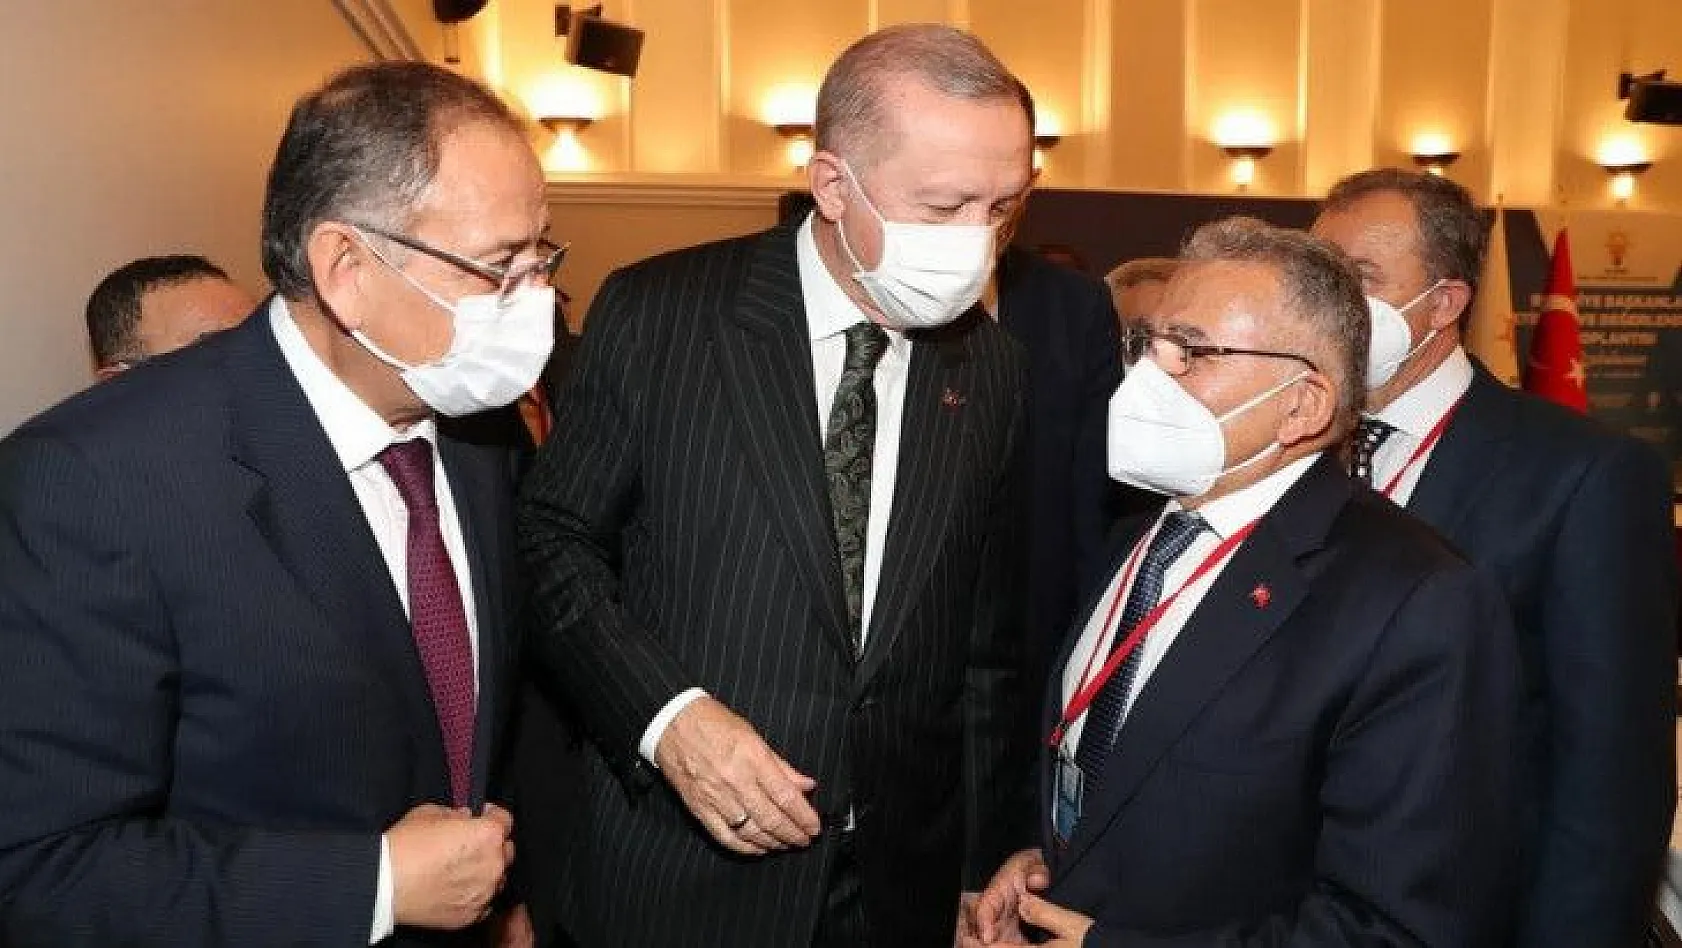 Büyükkılıç, Erdoğan ile görüşmesinin detayını açıkladı: Selamı var...